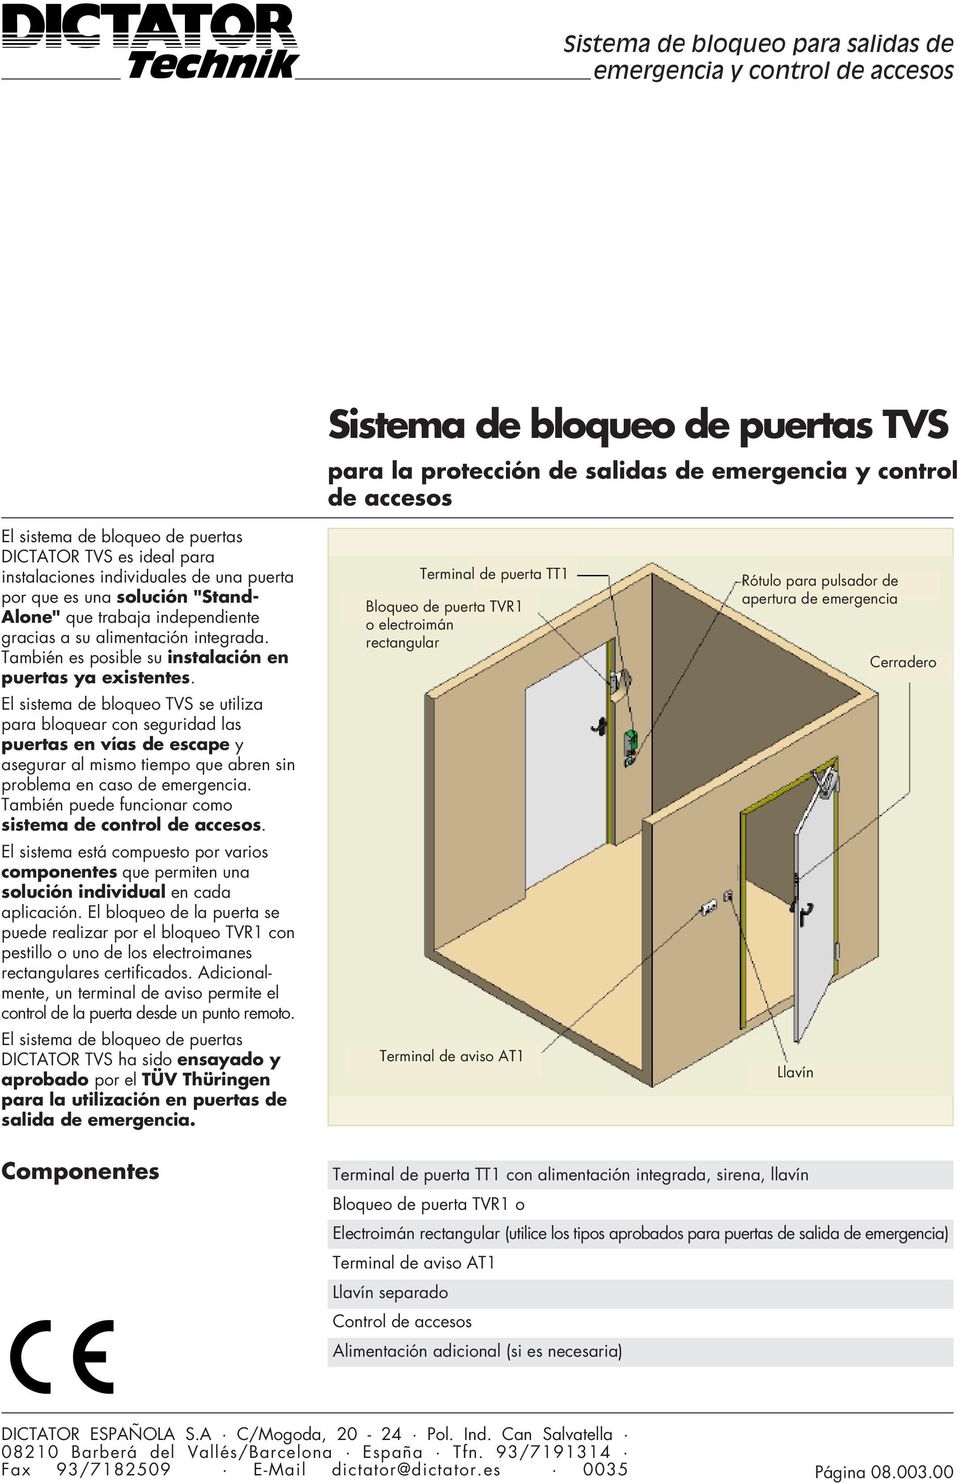 El sistema de bloqueo TVS se utiliza para bloquear con seguridad las puertas en vías de escape y asegurar al mismo tiempo que abren sin problema en caso de emergencia.